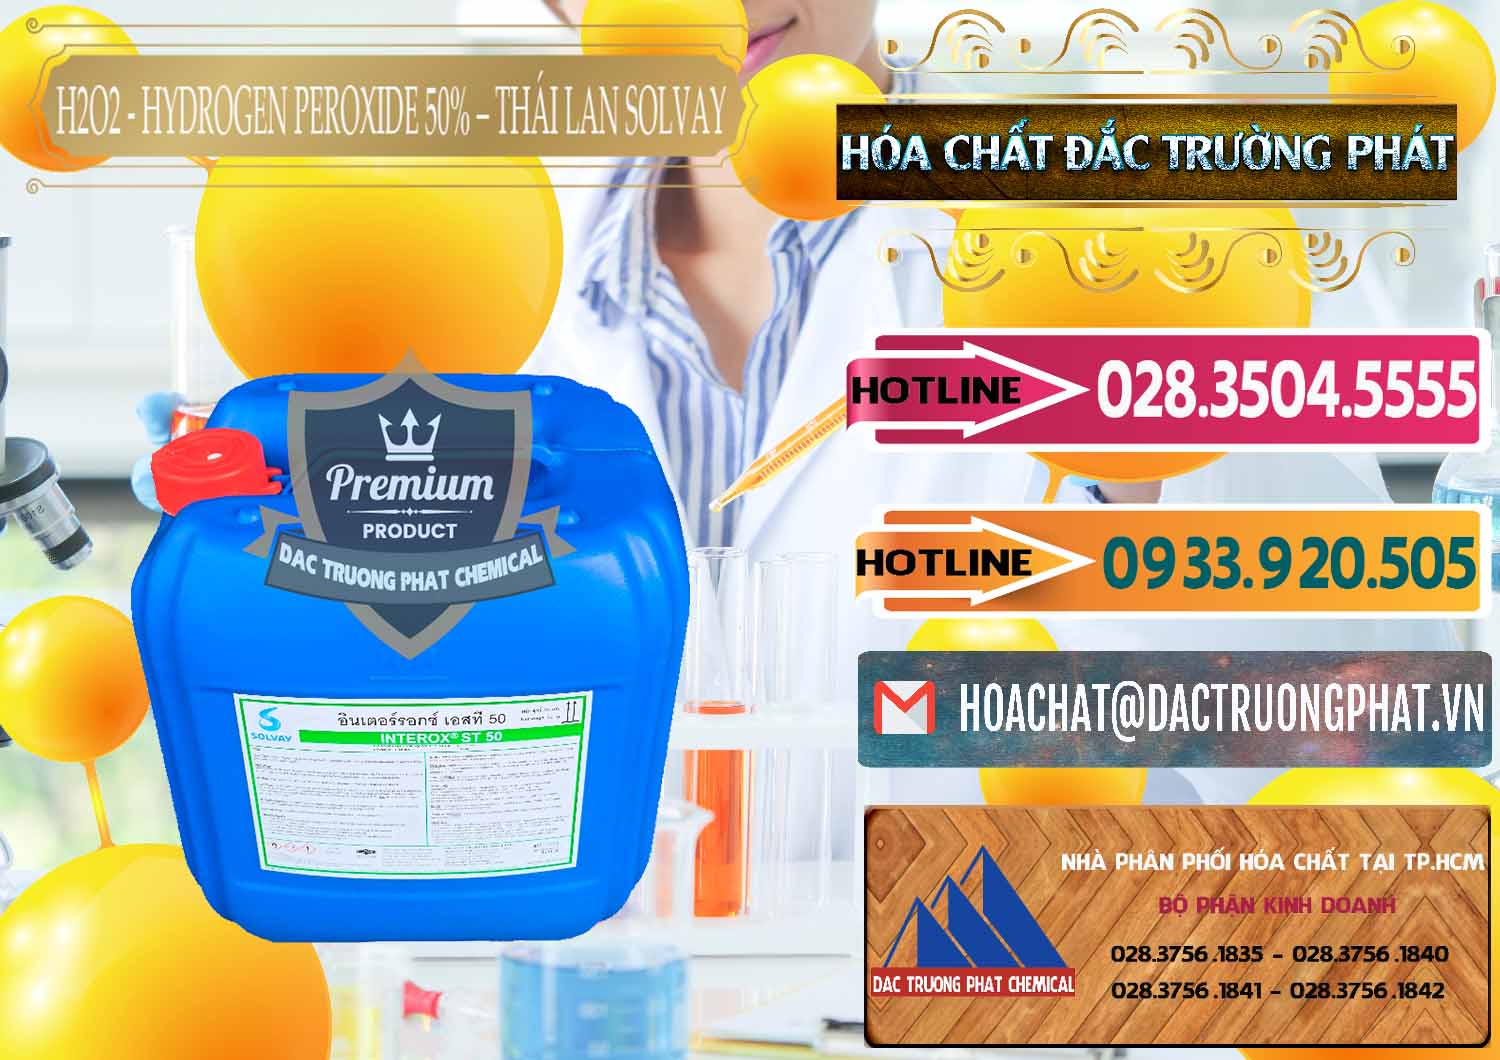 Bán _ cung ứng H2O2 - Hydrogen Peroxide 50% Thái Lan Solvay - 0068 - Nơi chuyên kinh doanh - phân phối hóa chất tại TP.HCM - dactruongphat.vn